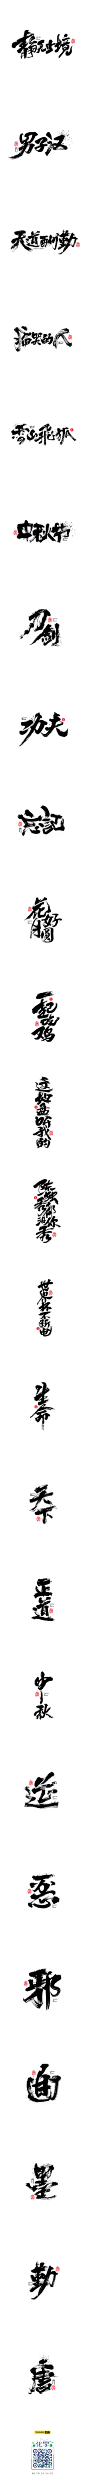 毛笔字<书写集 7 >-字体传奇网-中国首个字体品牌设计师交流网